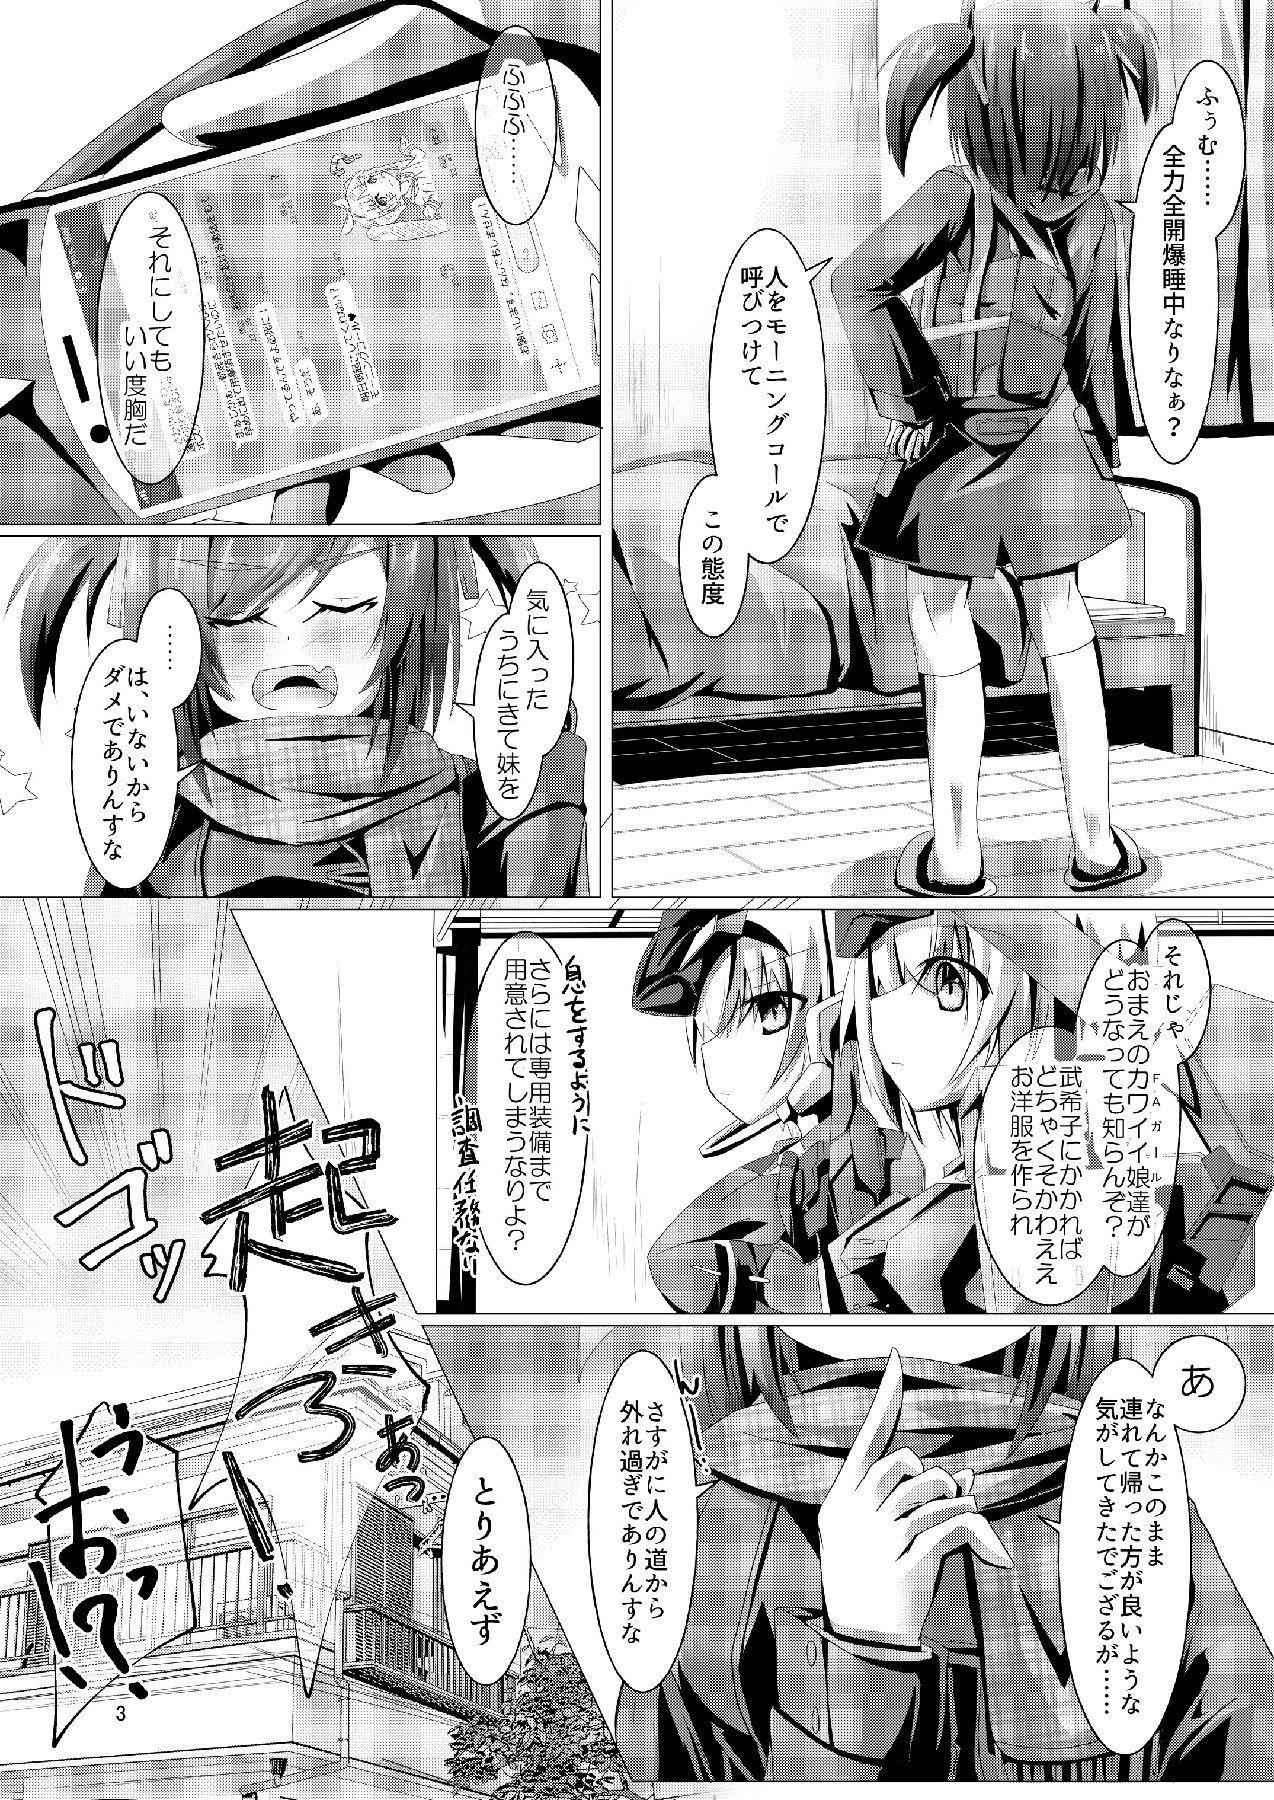 Corrida Bukiko ga Kokuhaku Sareta Ken 3 - Frame arms girl Free - Page 3